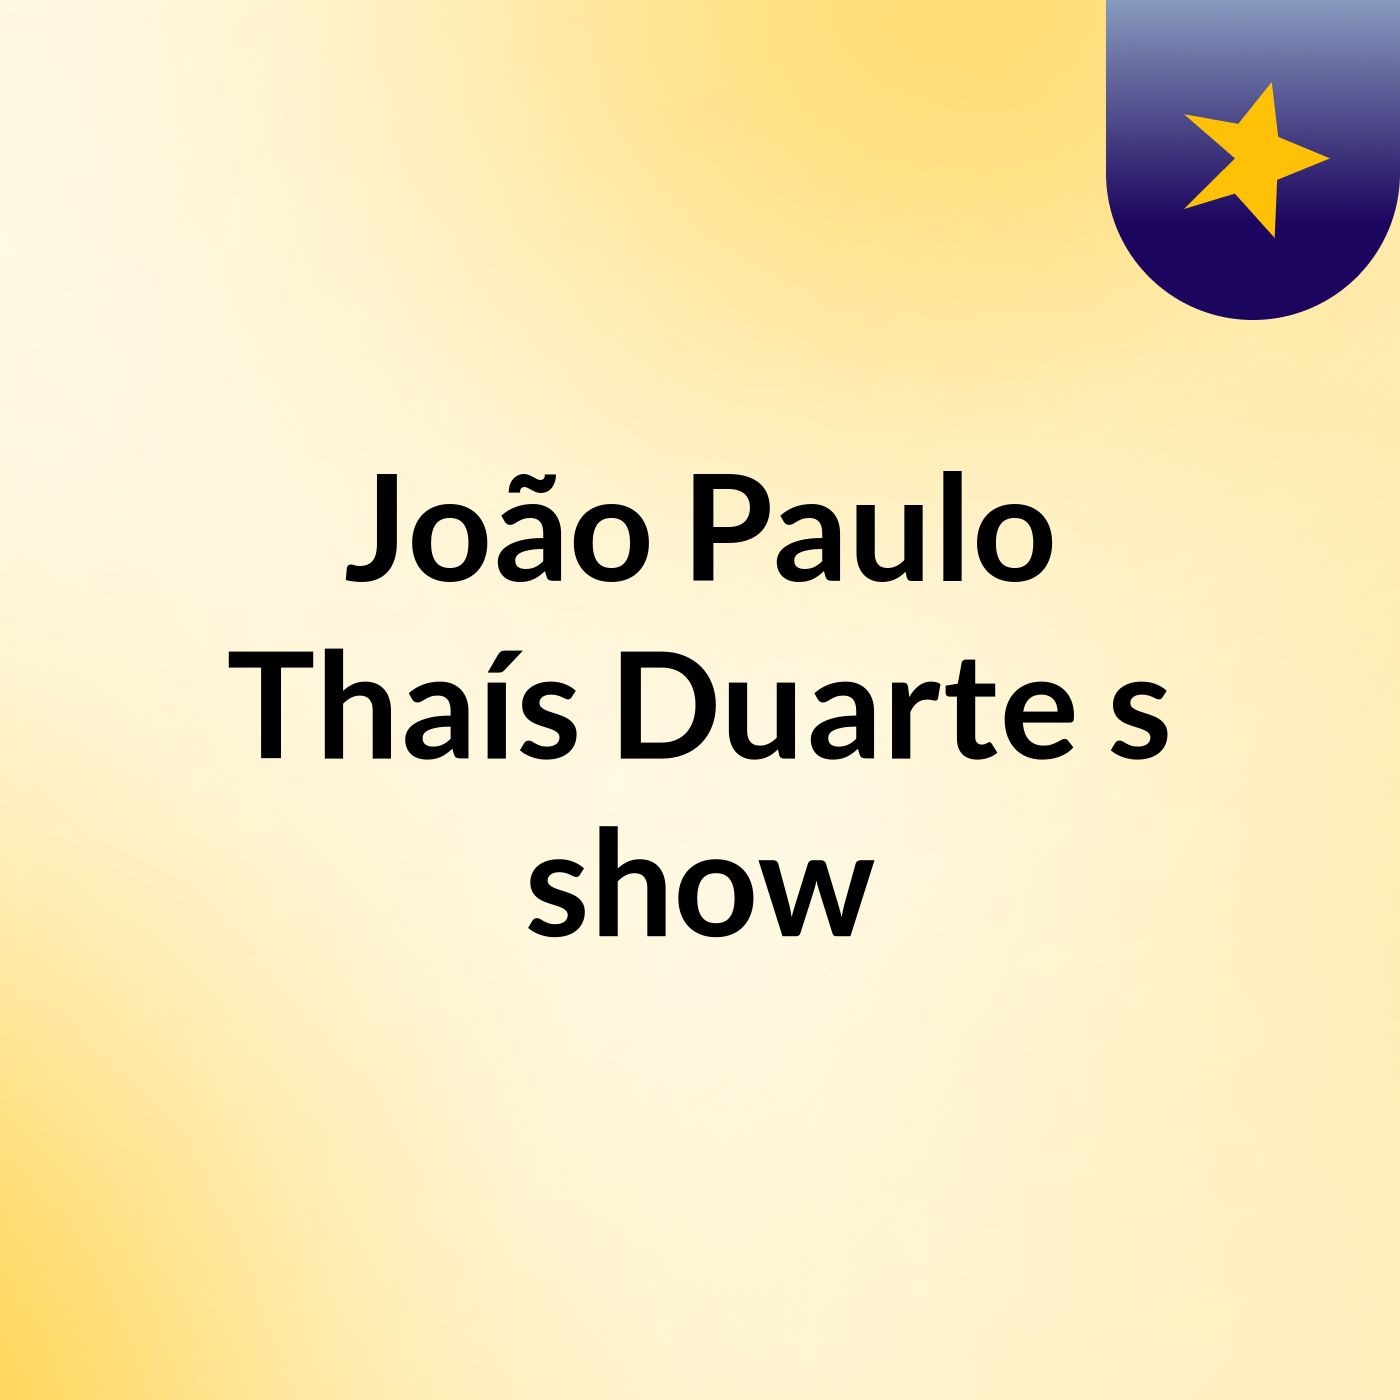 João Paulo Thaís Duarte's show